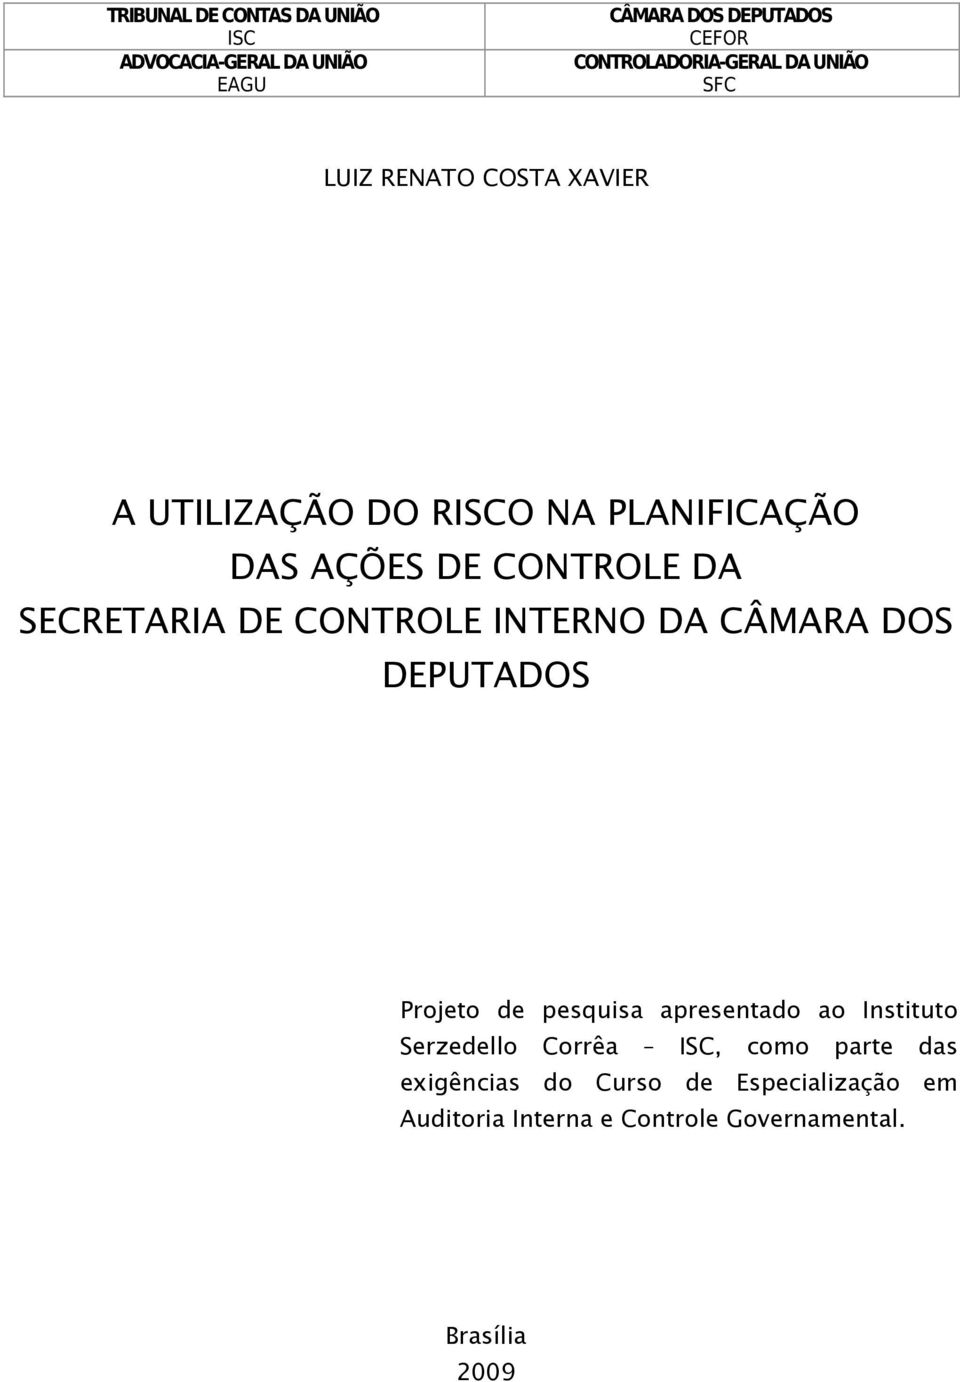 pesquisa apresentado ao Instituto Serzedello Corrêa, como parte das exigências